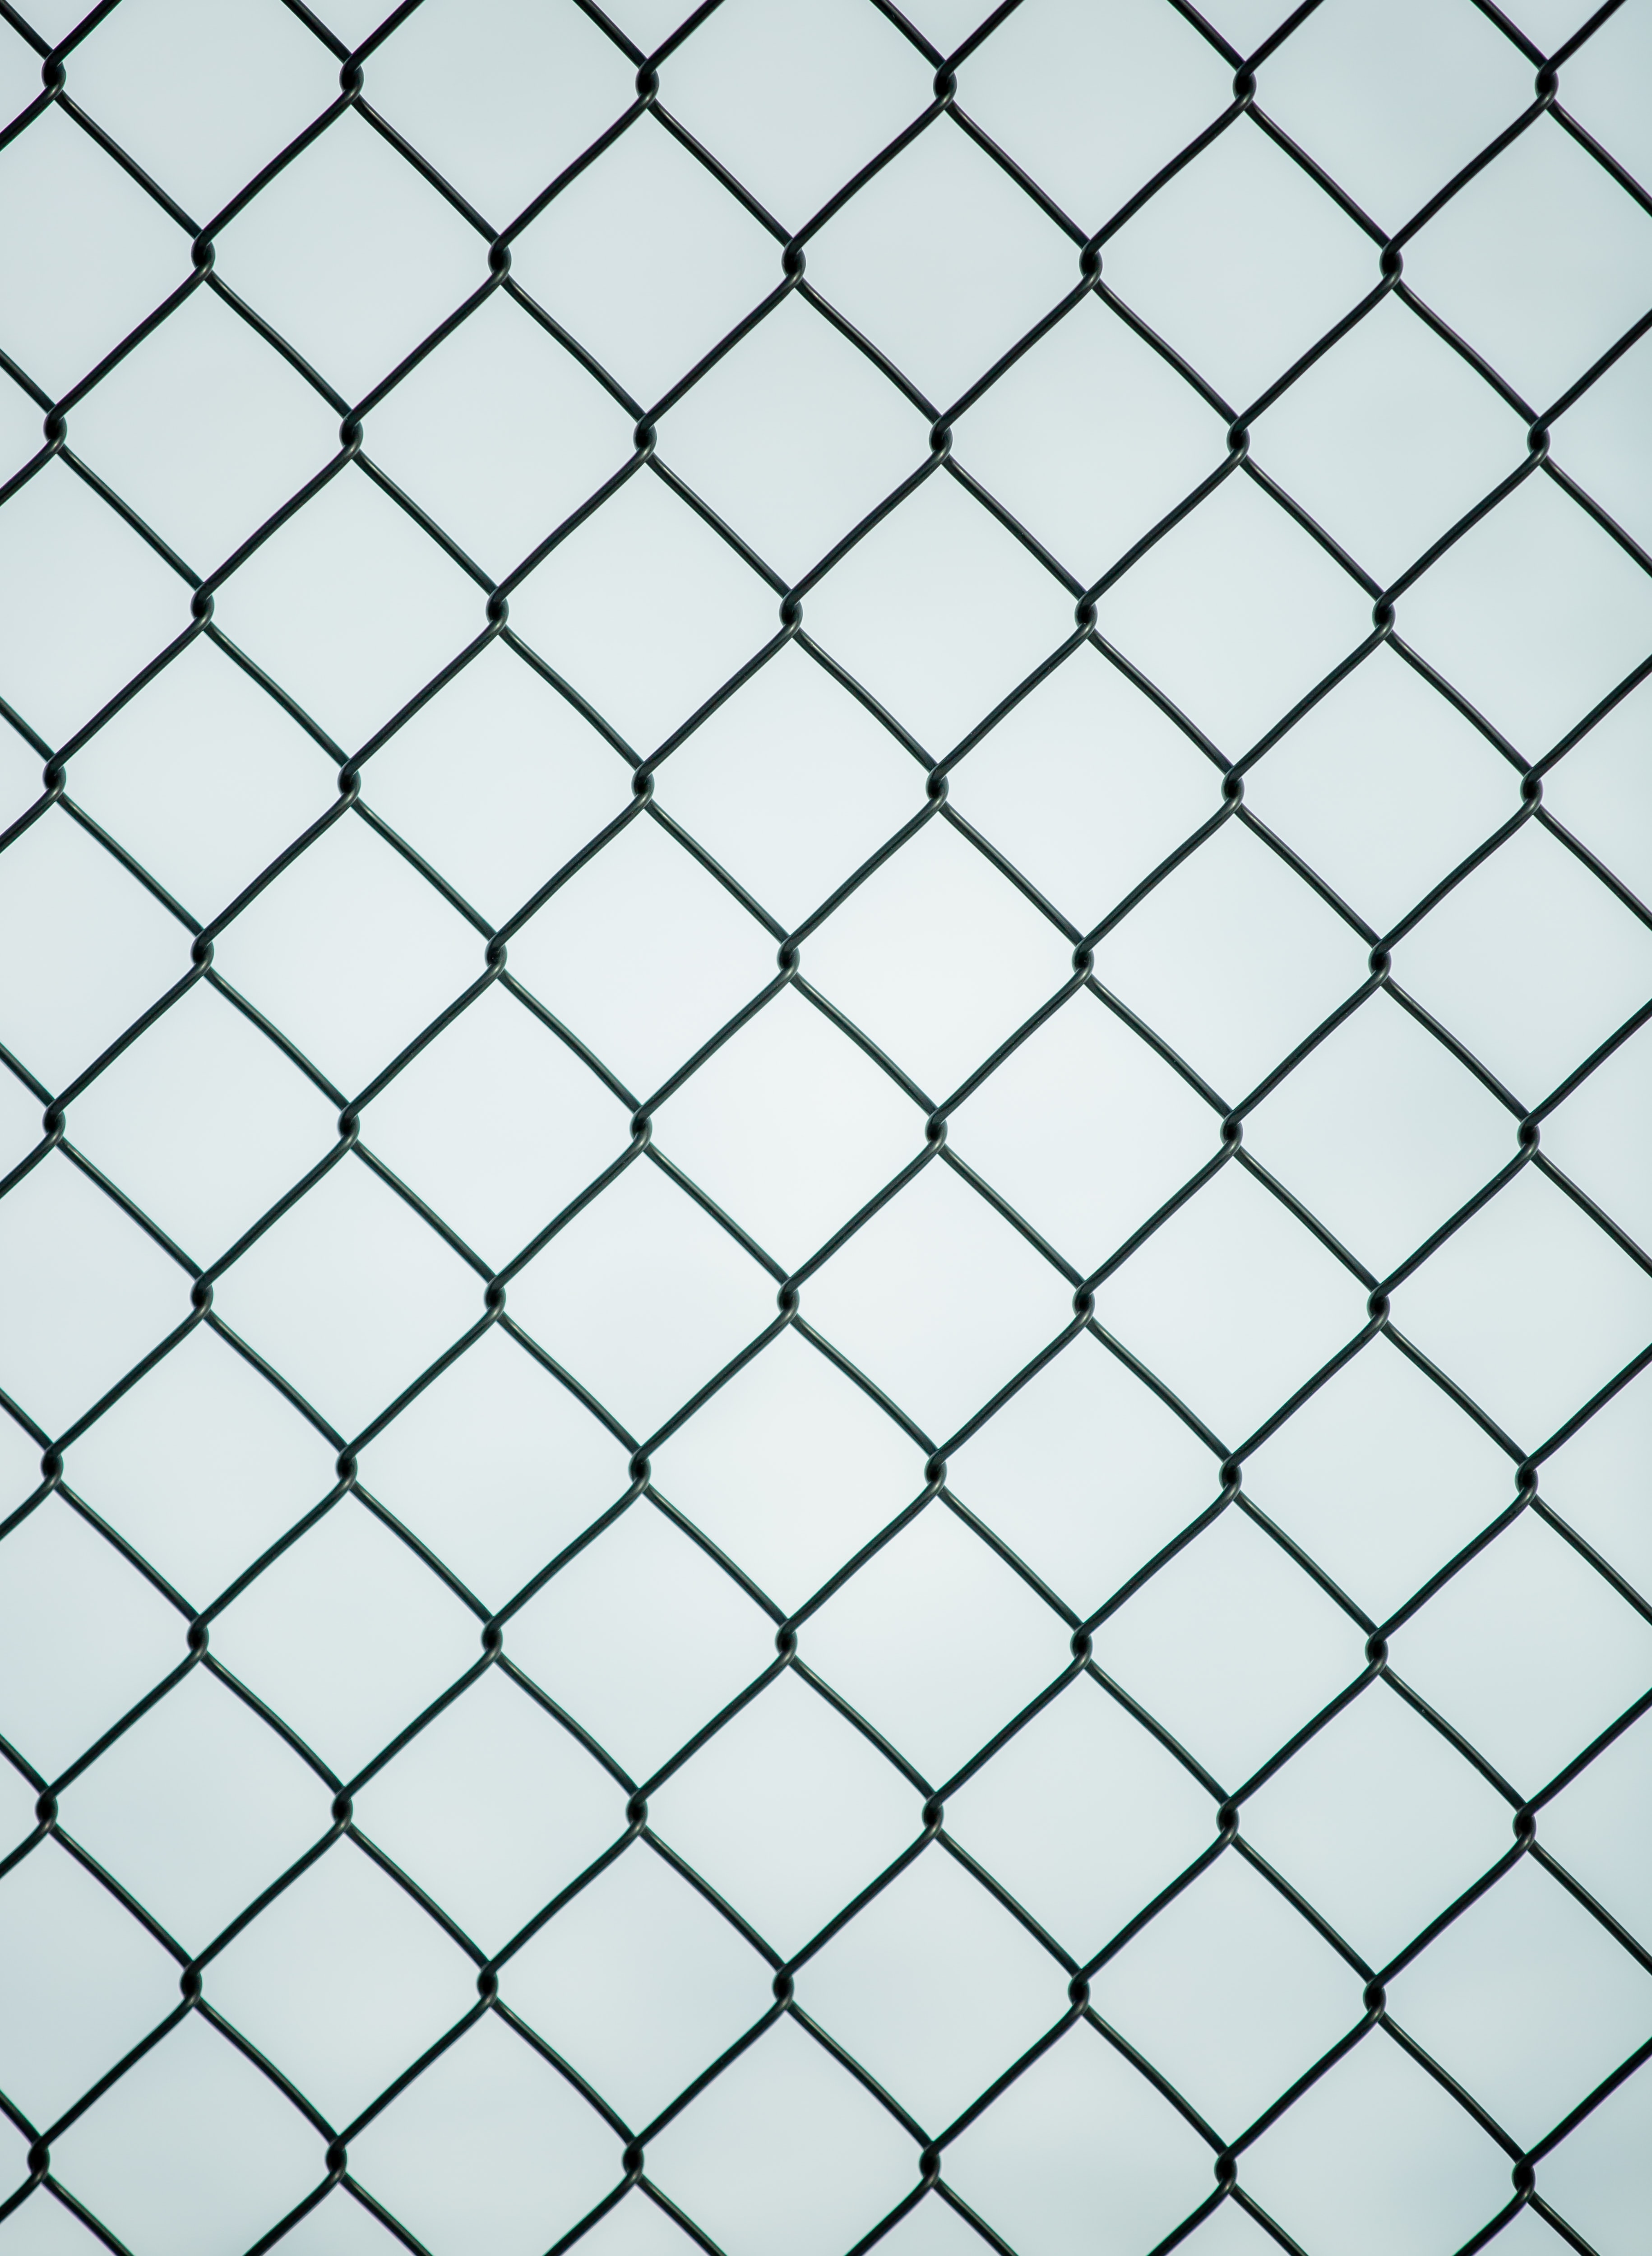 minimalism, grid, fence, lattice, trellis